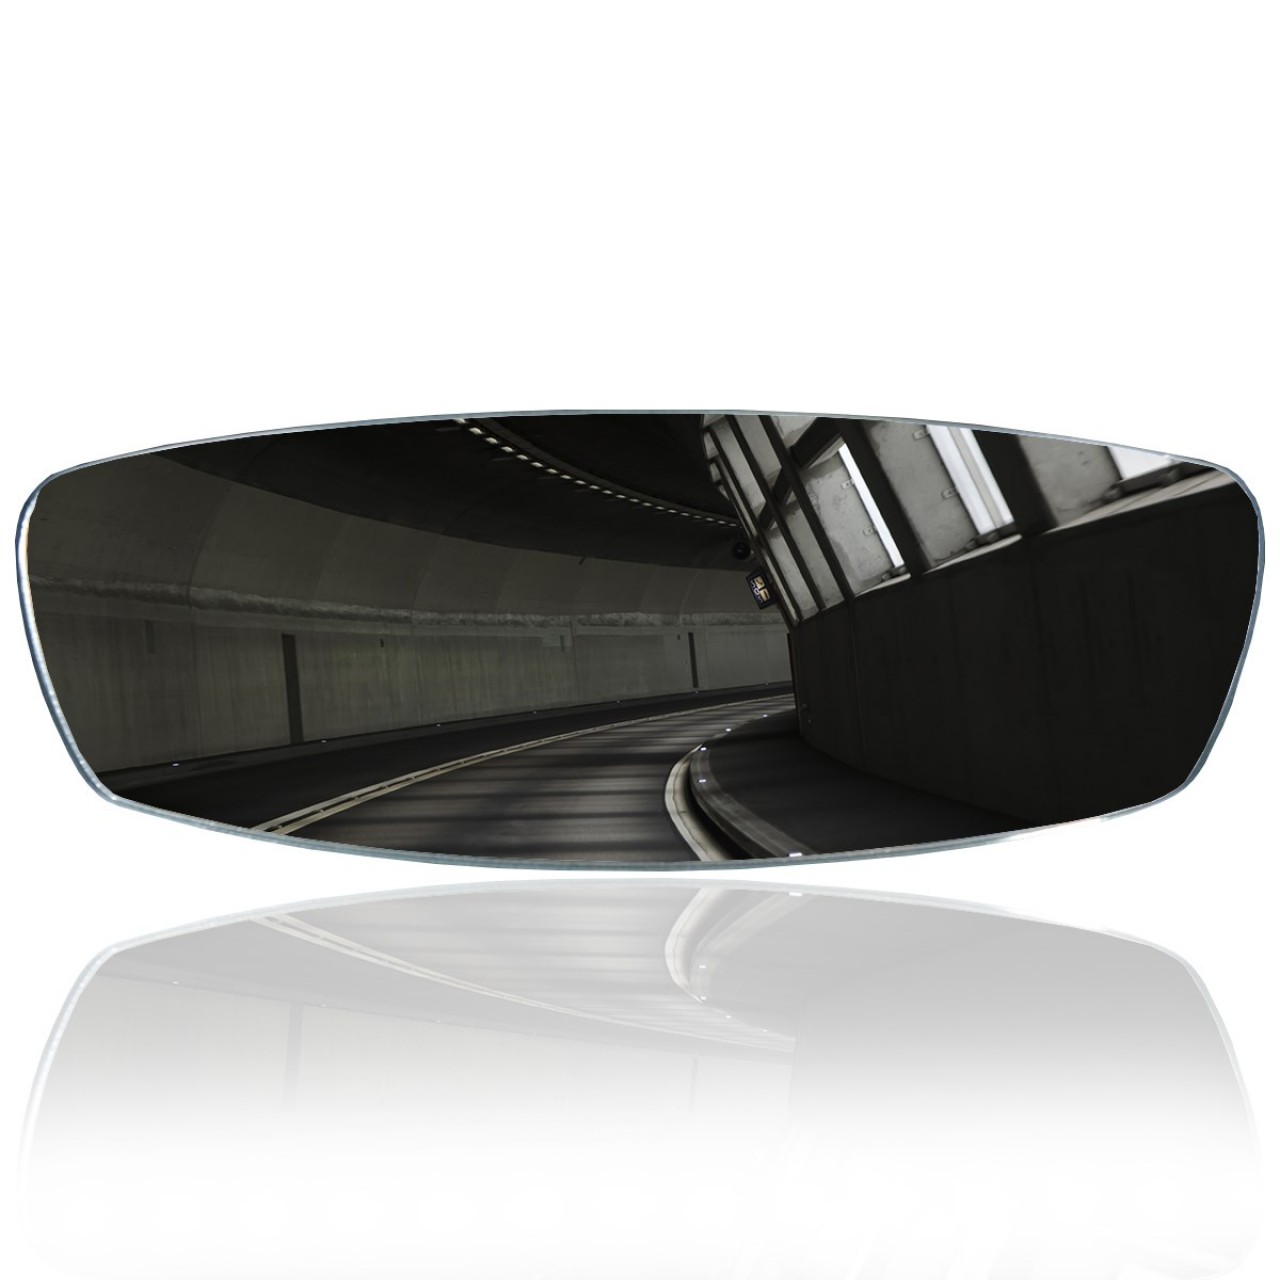 Safir Geçme-1 Lastikli Universal İç Dikiz Aynası r320 300x90 mm